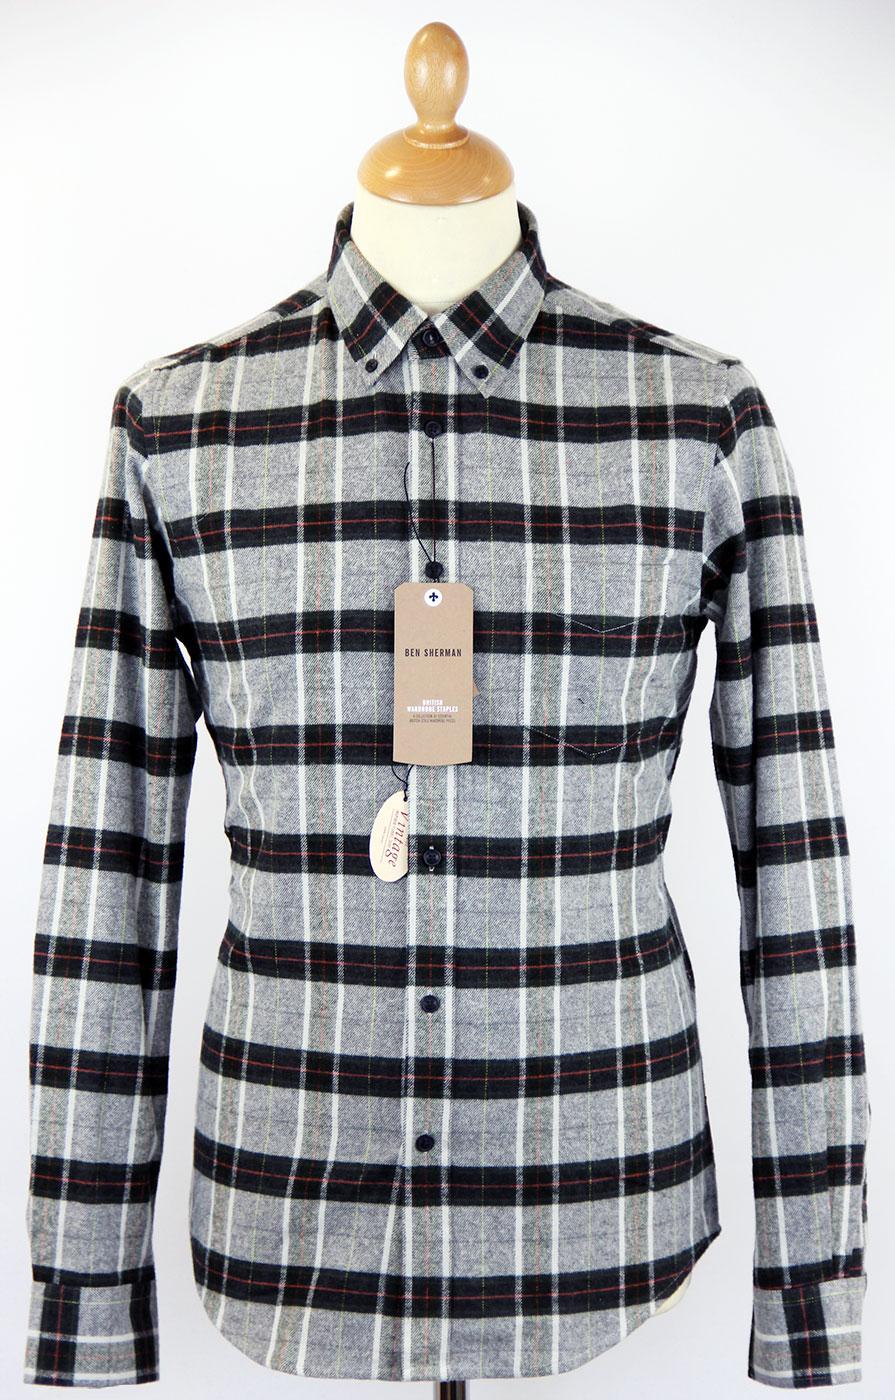 Flannel Check BEN SHERMAN Retro Mod L/S Shirt